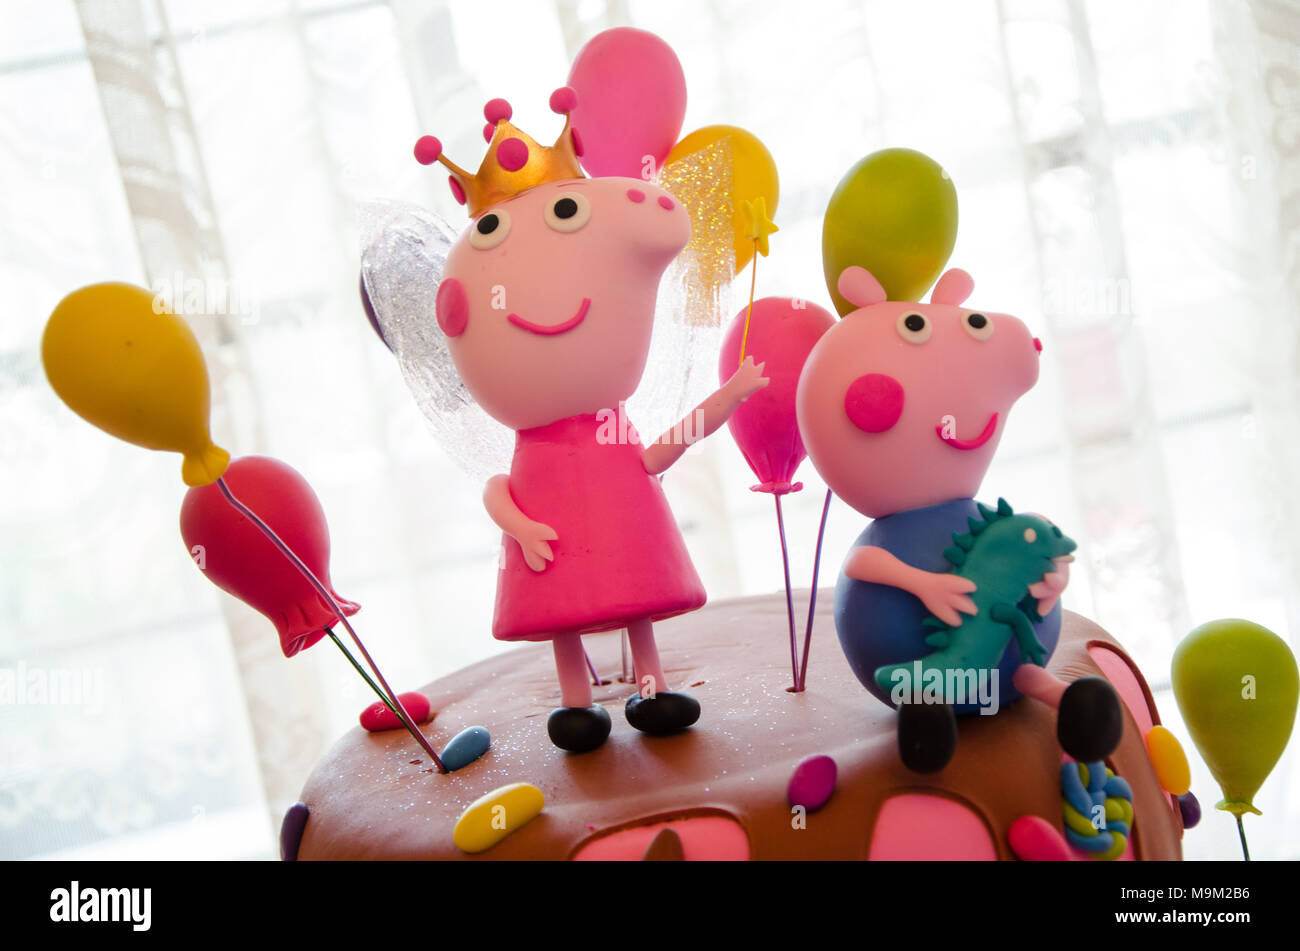 Fete Pour Les Enfants Decoration De Gateau Avec La Thematique De Peppa Pig Photo Stock Alamy